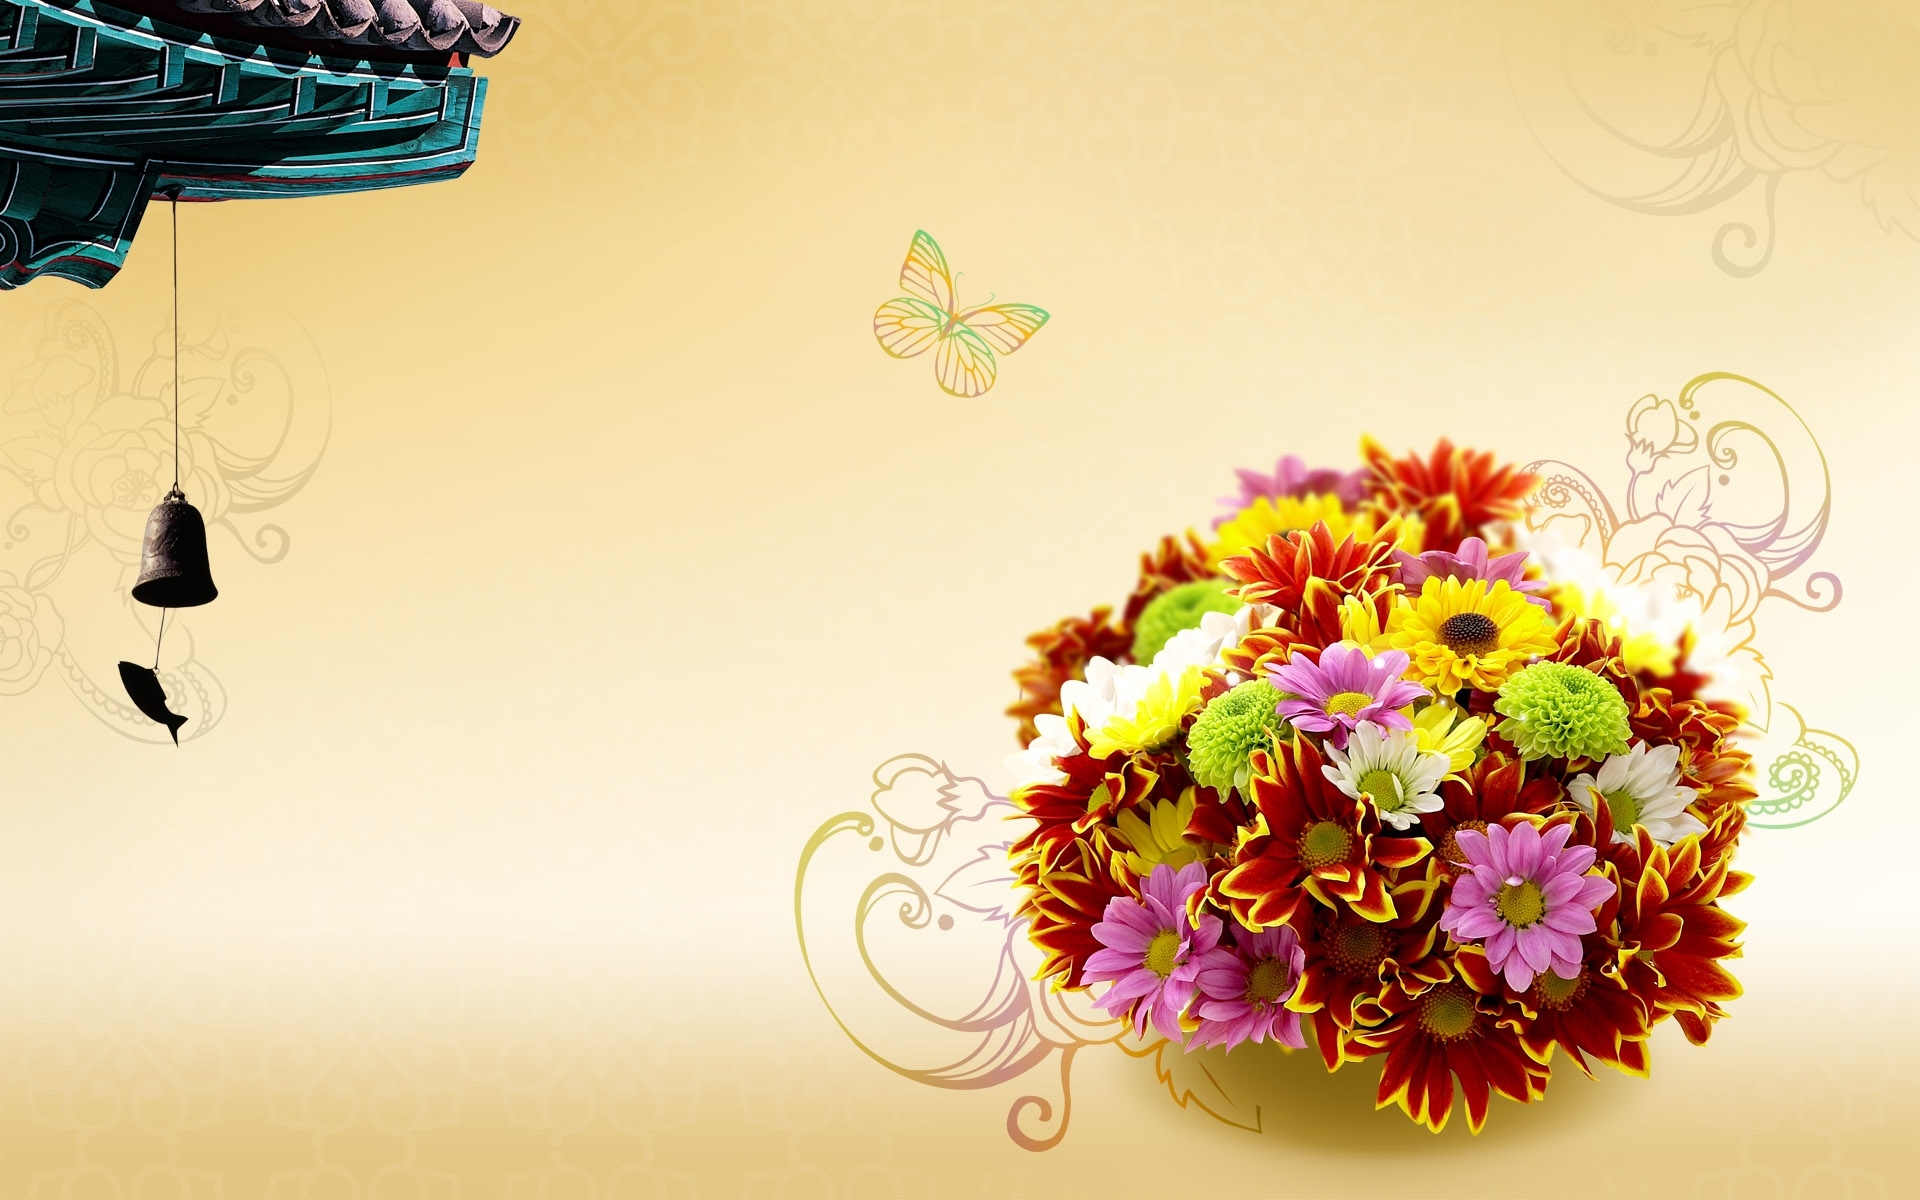 Скачать обои бесплатно Цветы, Фон, Растения картинка на рабочий стол ПК